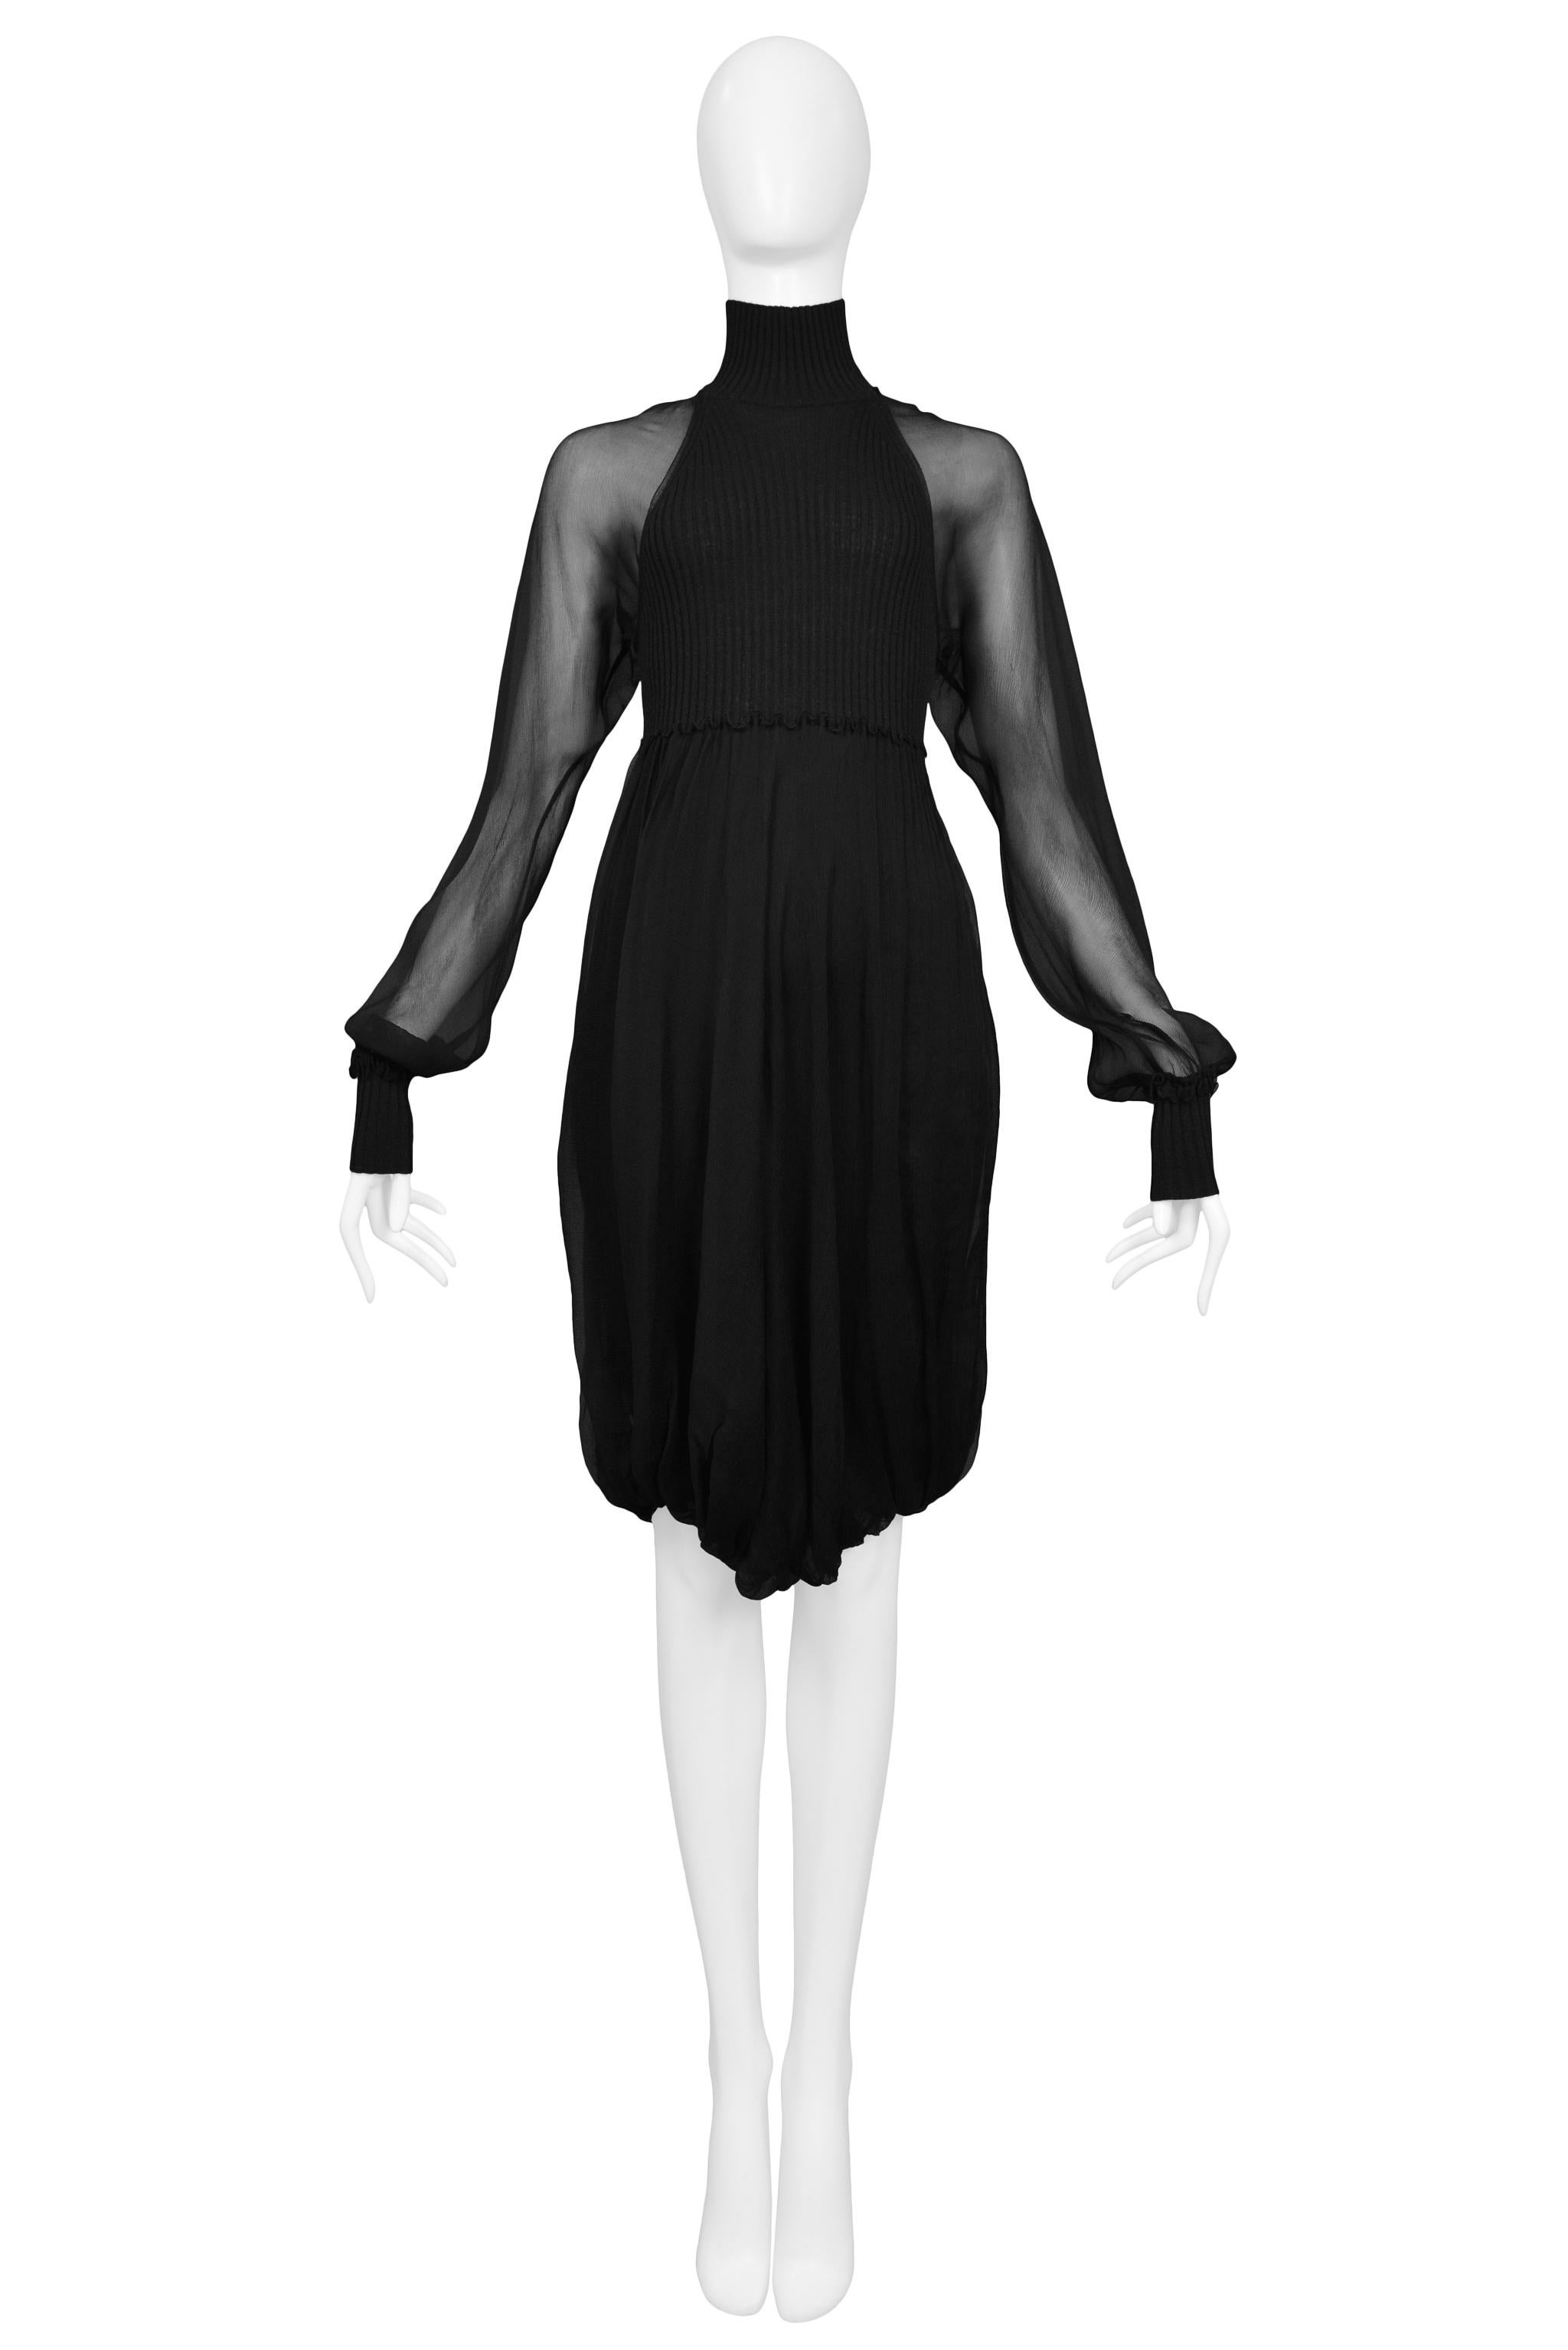 Resurrection Vintage freut sich, ein schwarzes Jean Paul Gaultier Illusionskleid mit durchsichtigen Chiffon-Ärmeln, hohem Halsausschnitt, geripptem Mieder und Manschetten sowie drapiertem Rock anbieten zu können.

Jean Paul Gaultier
Größe: Klein